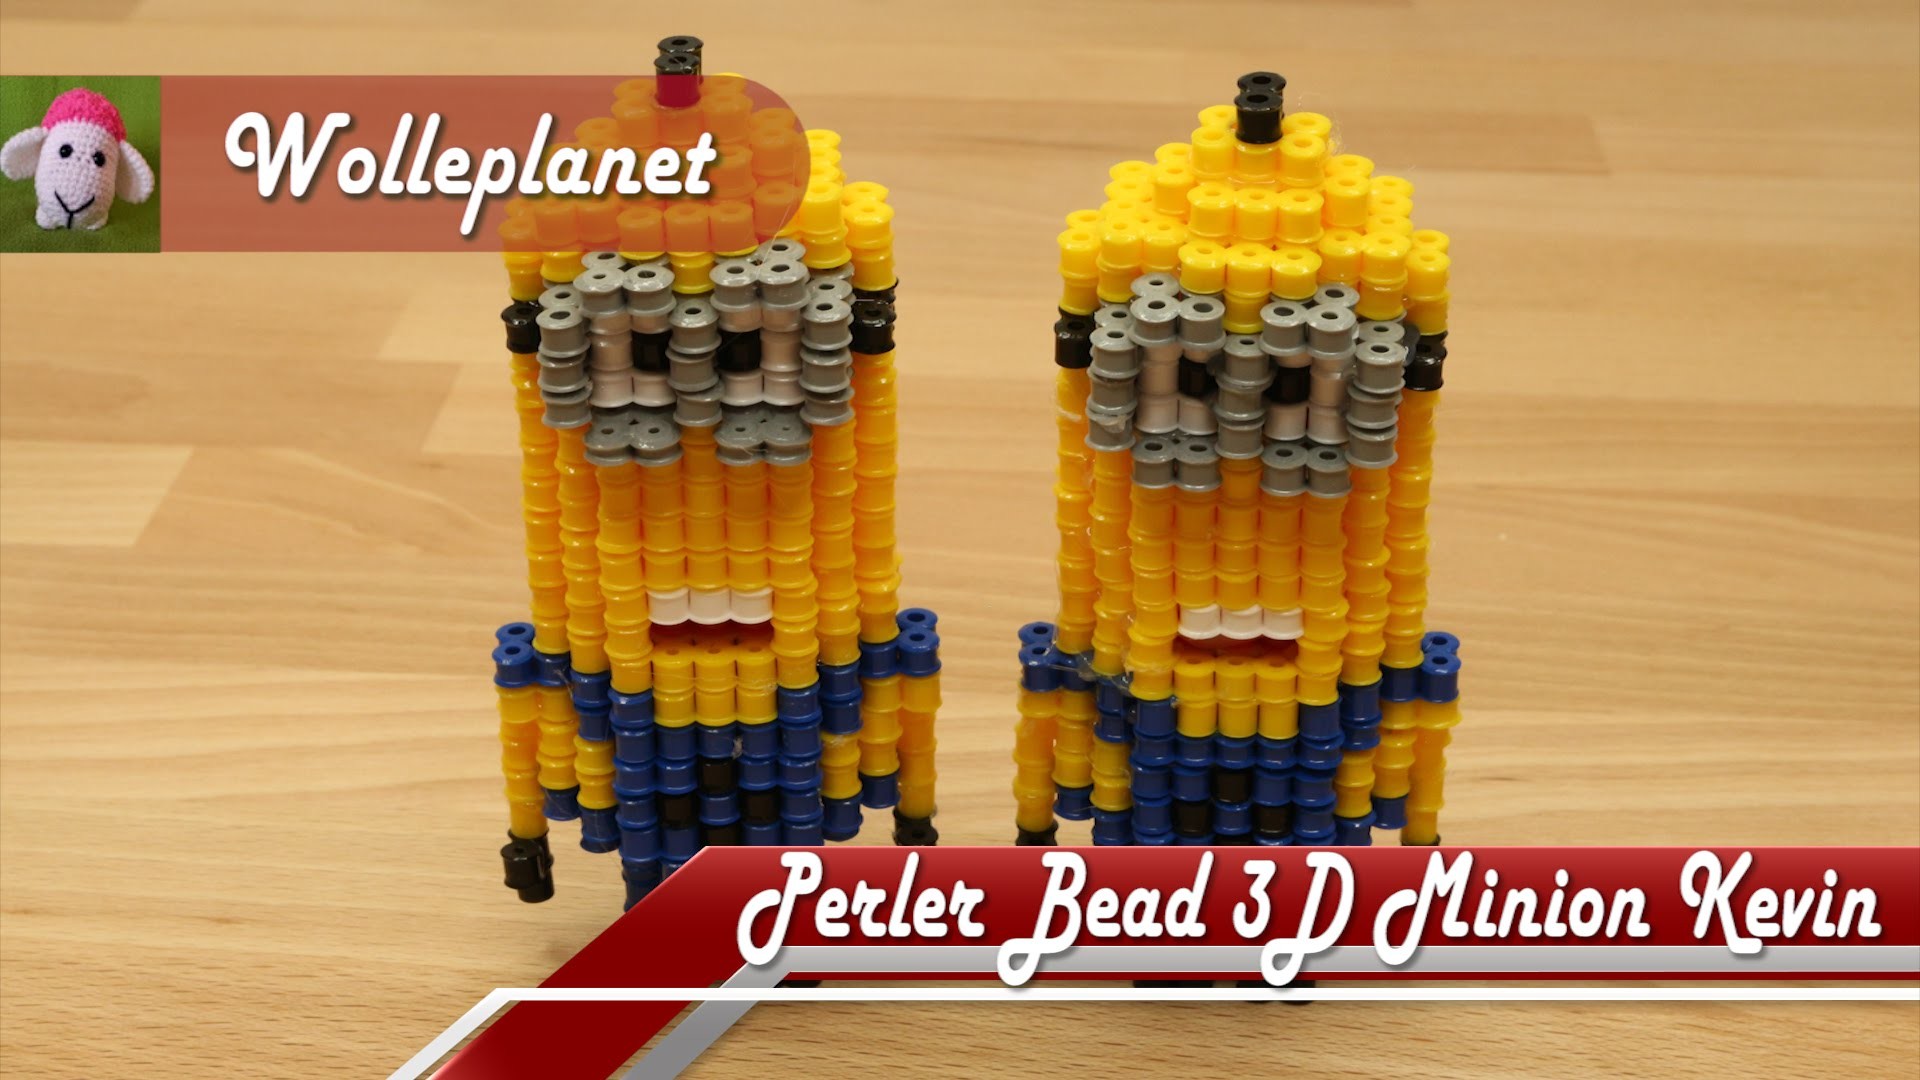 Perler Bead 3D Minion Kevin